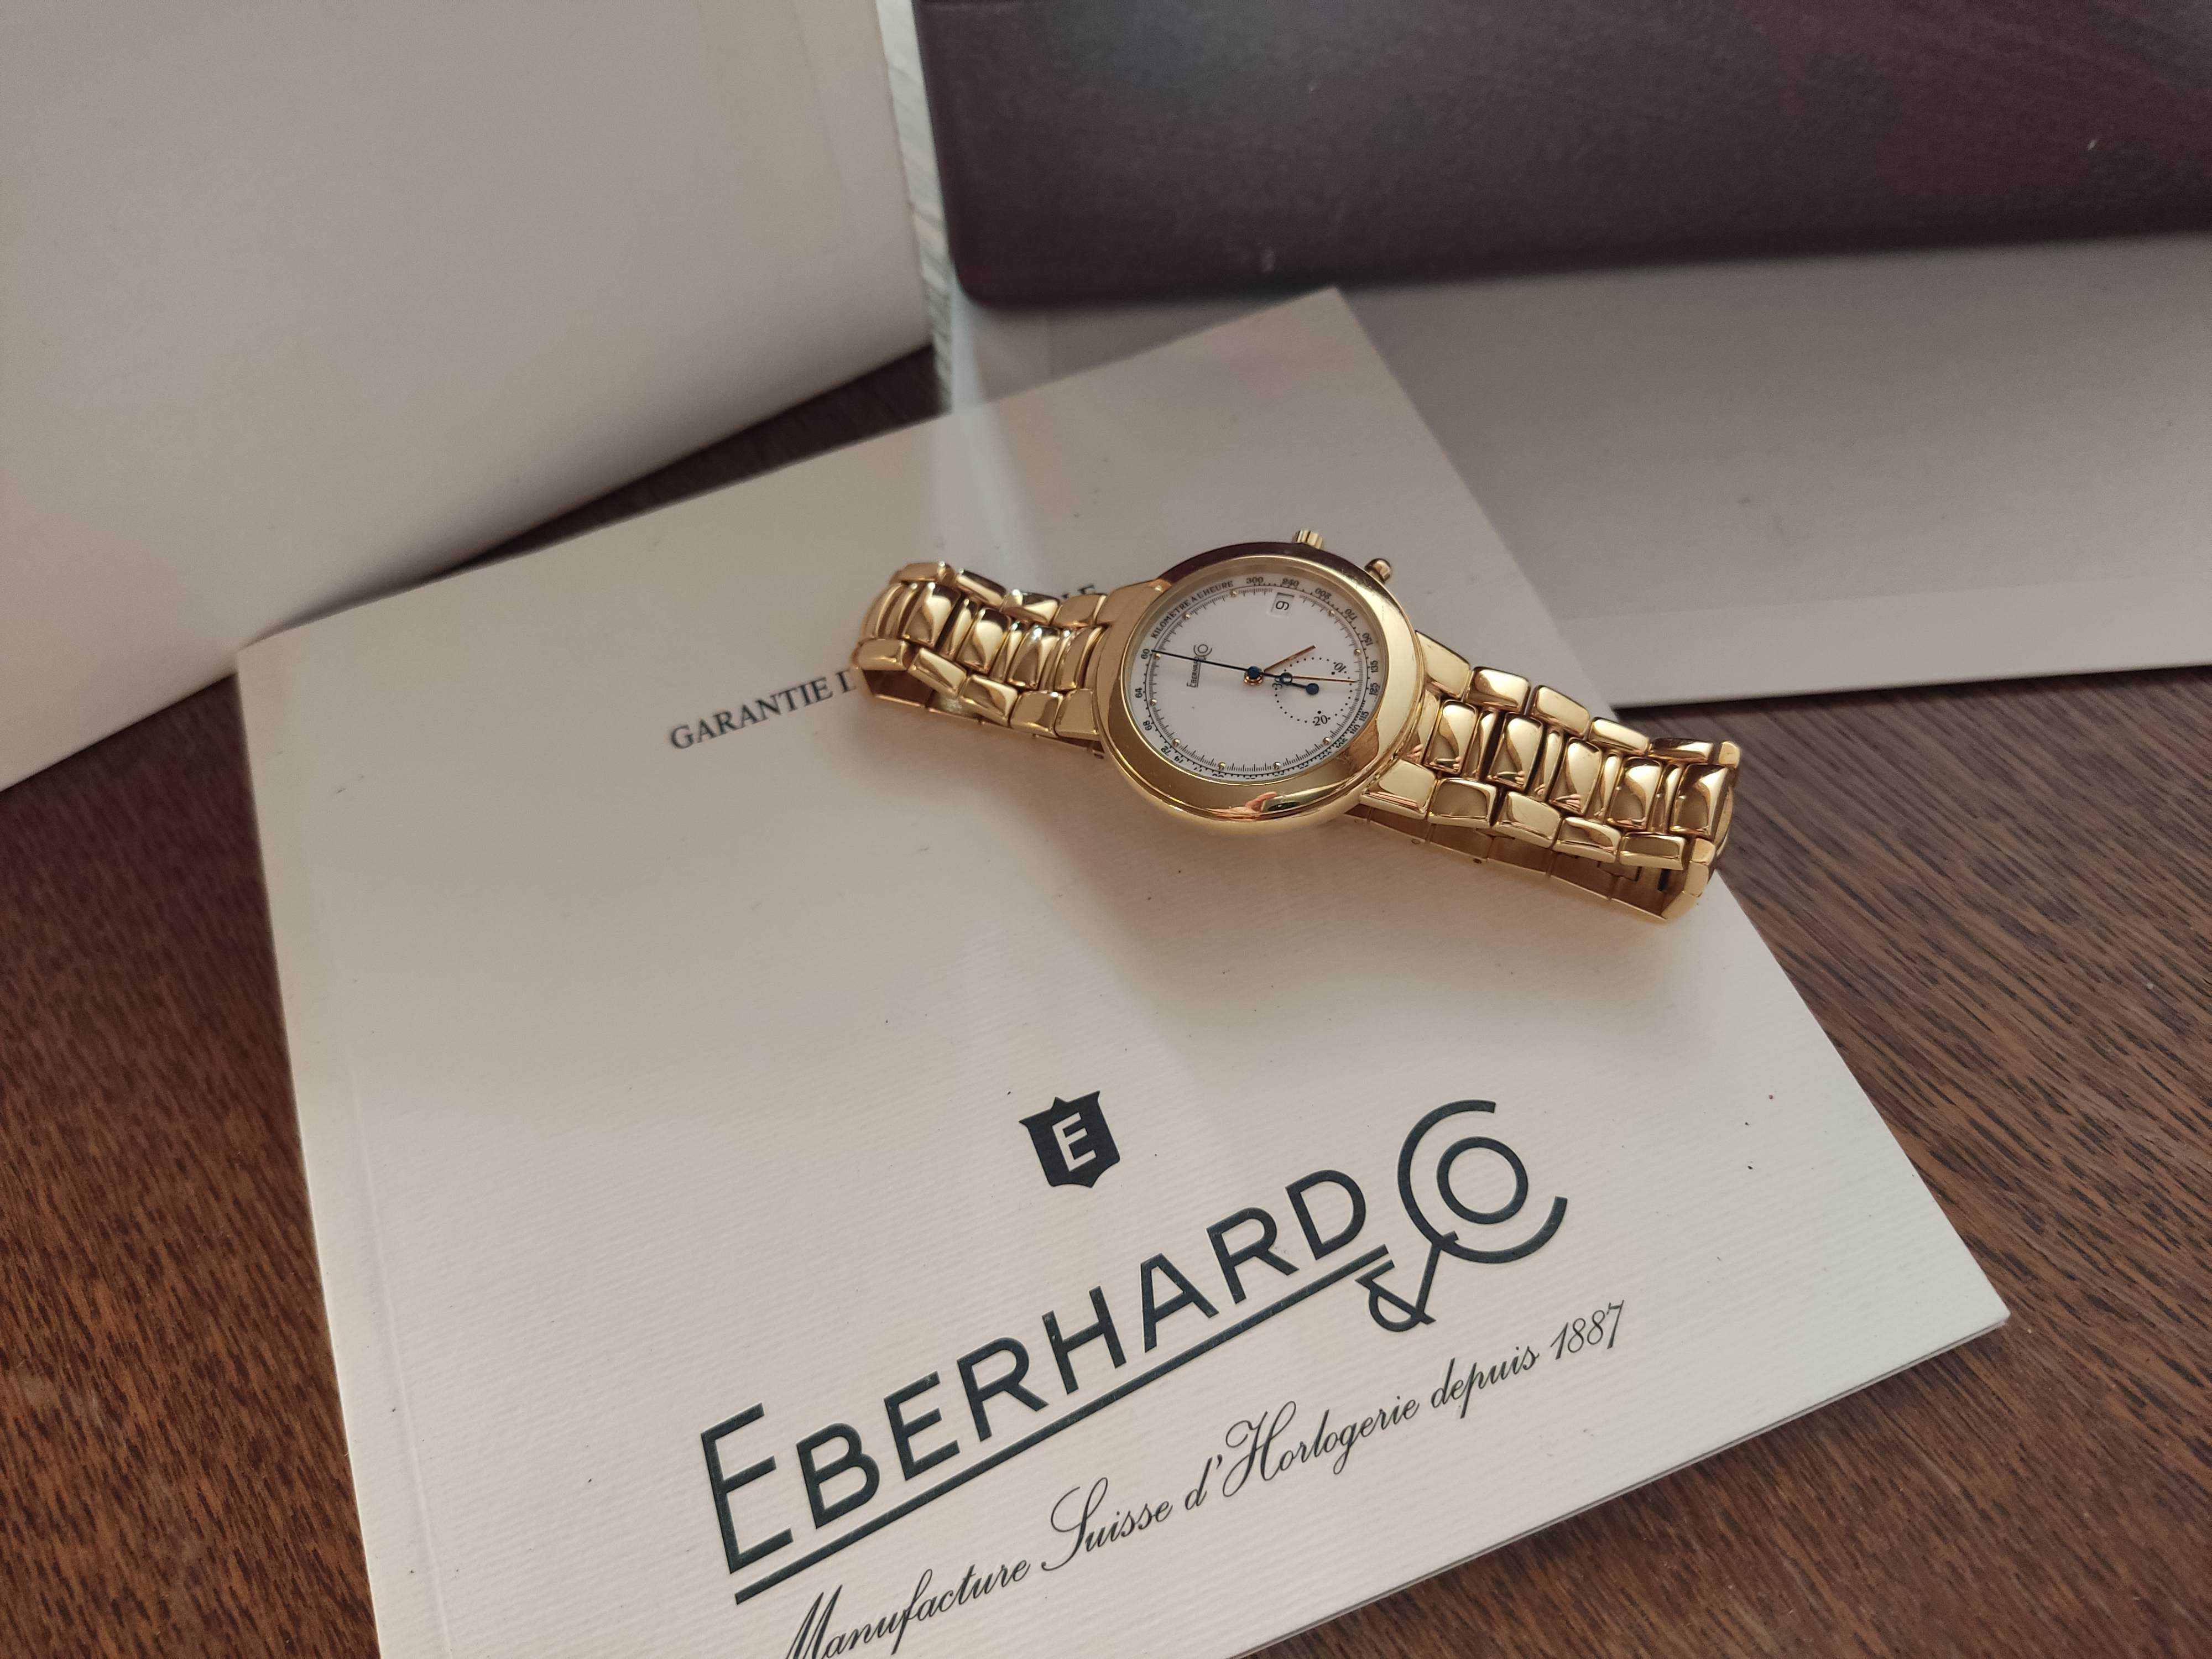 Eberhard złoto 18K gold 750 złoty zegarek